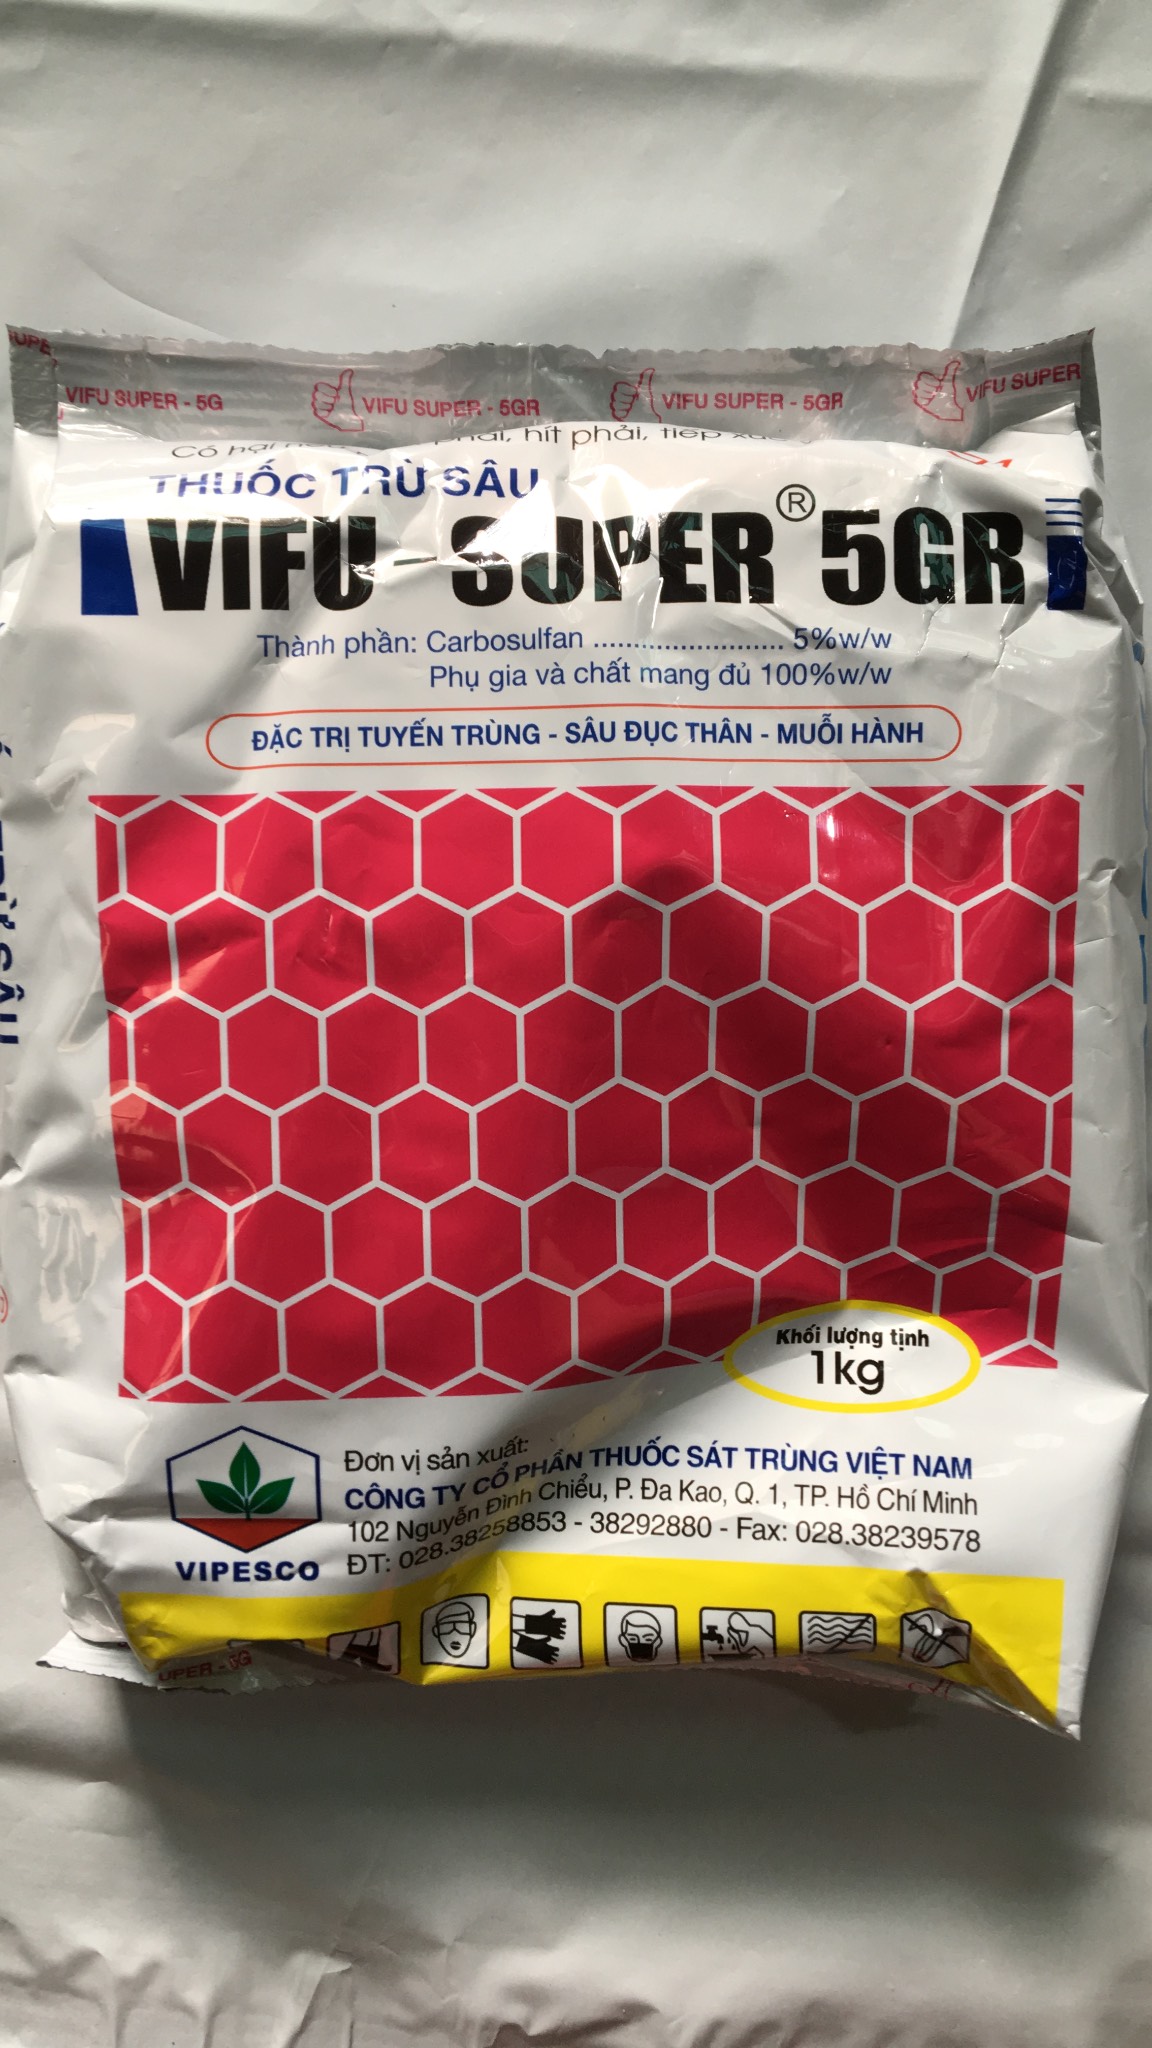 VIFU SUPER 5GR - Phòng trừ tuyến trùng sùng đất rải gốc cây trồng gói 1kg